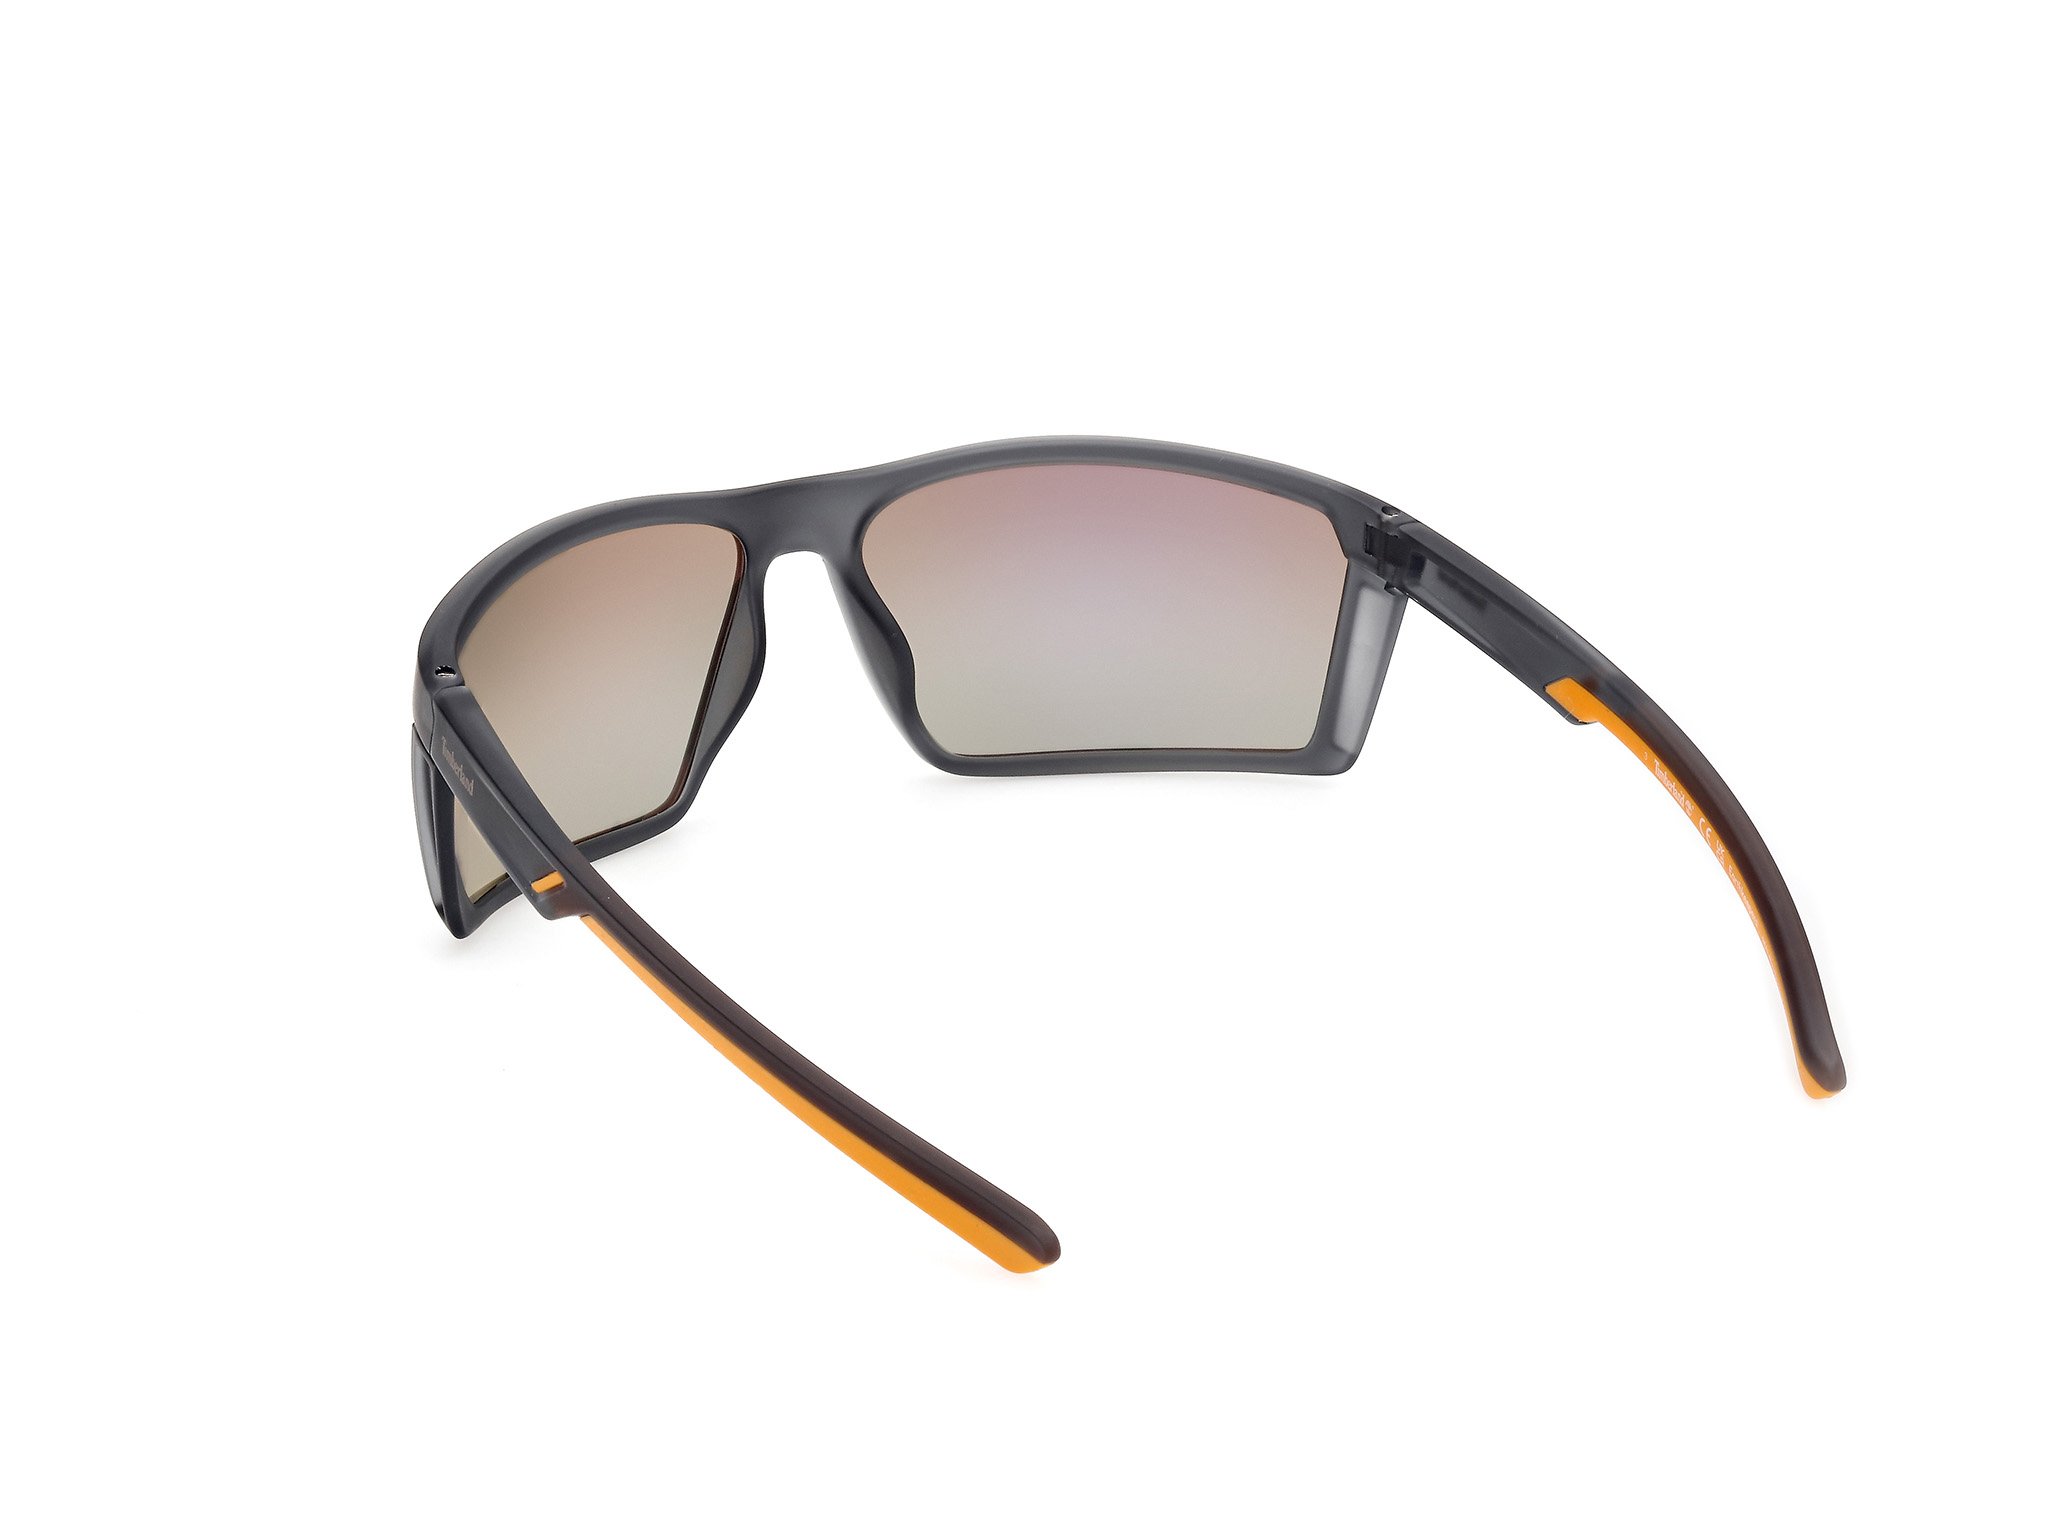 Das Bild zeigt die Sonnenbrille TB9333 20D von der Marke Timberland in grau matt.